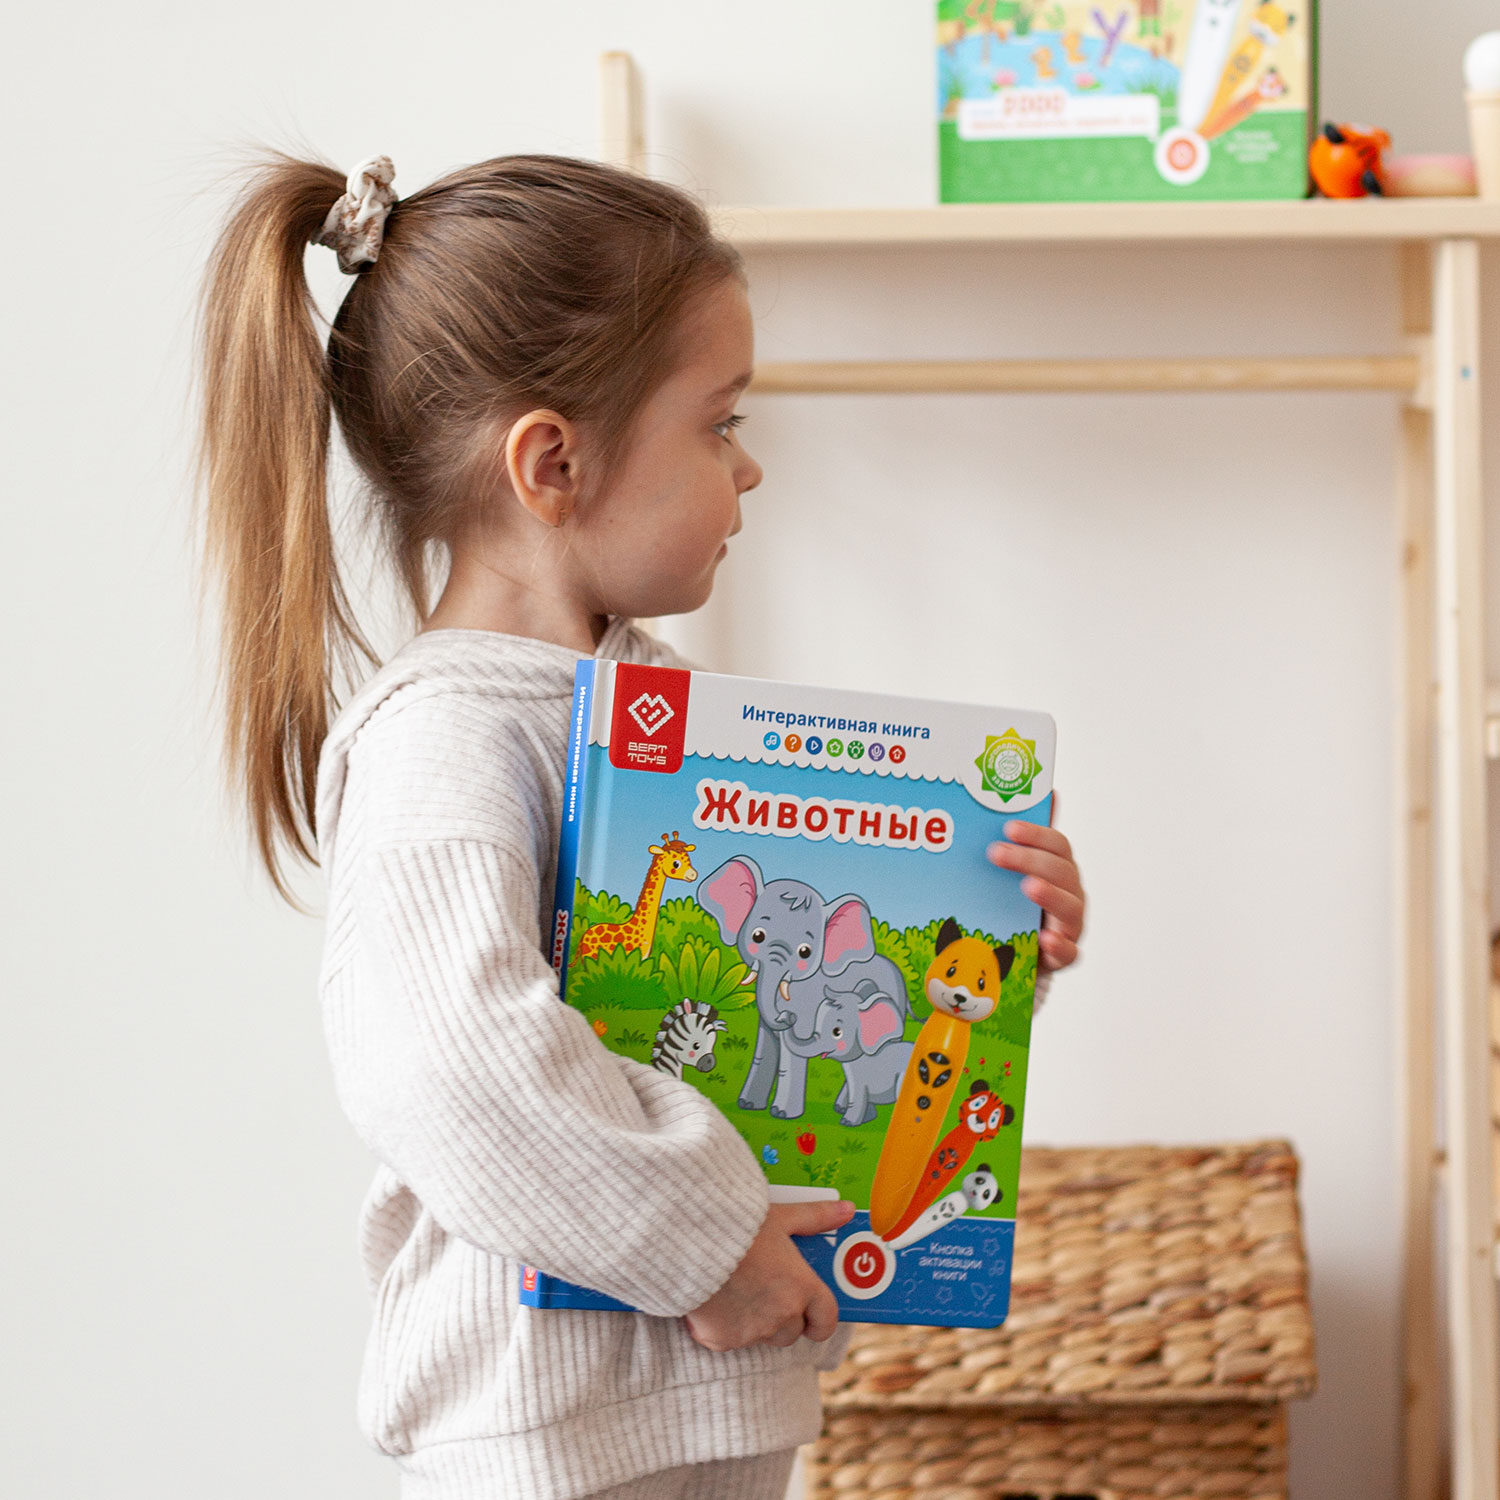 Комплект интерактивные книг BertToys для логопедических игрушек - фото 15